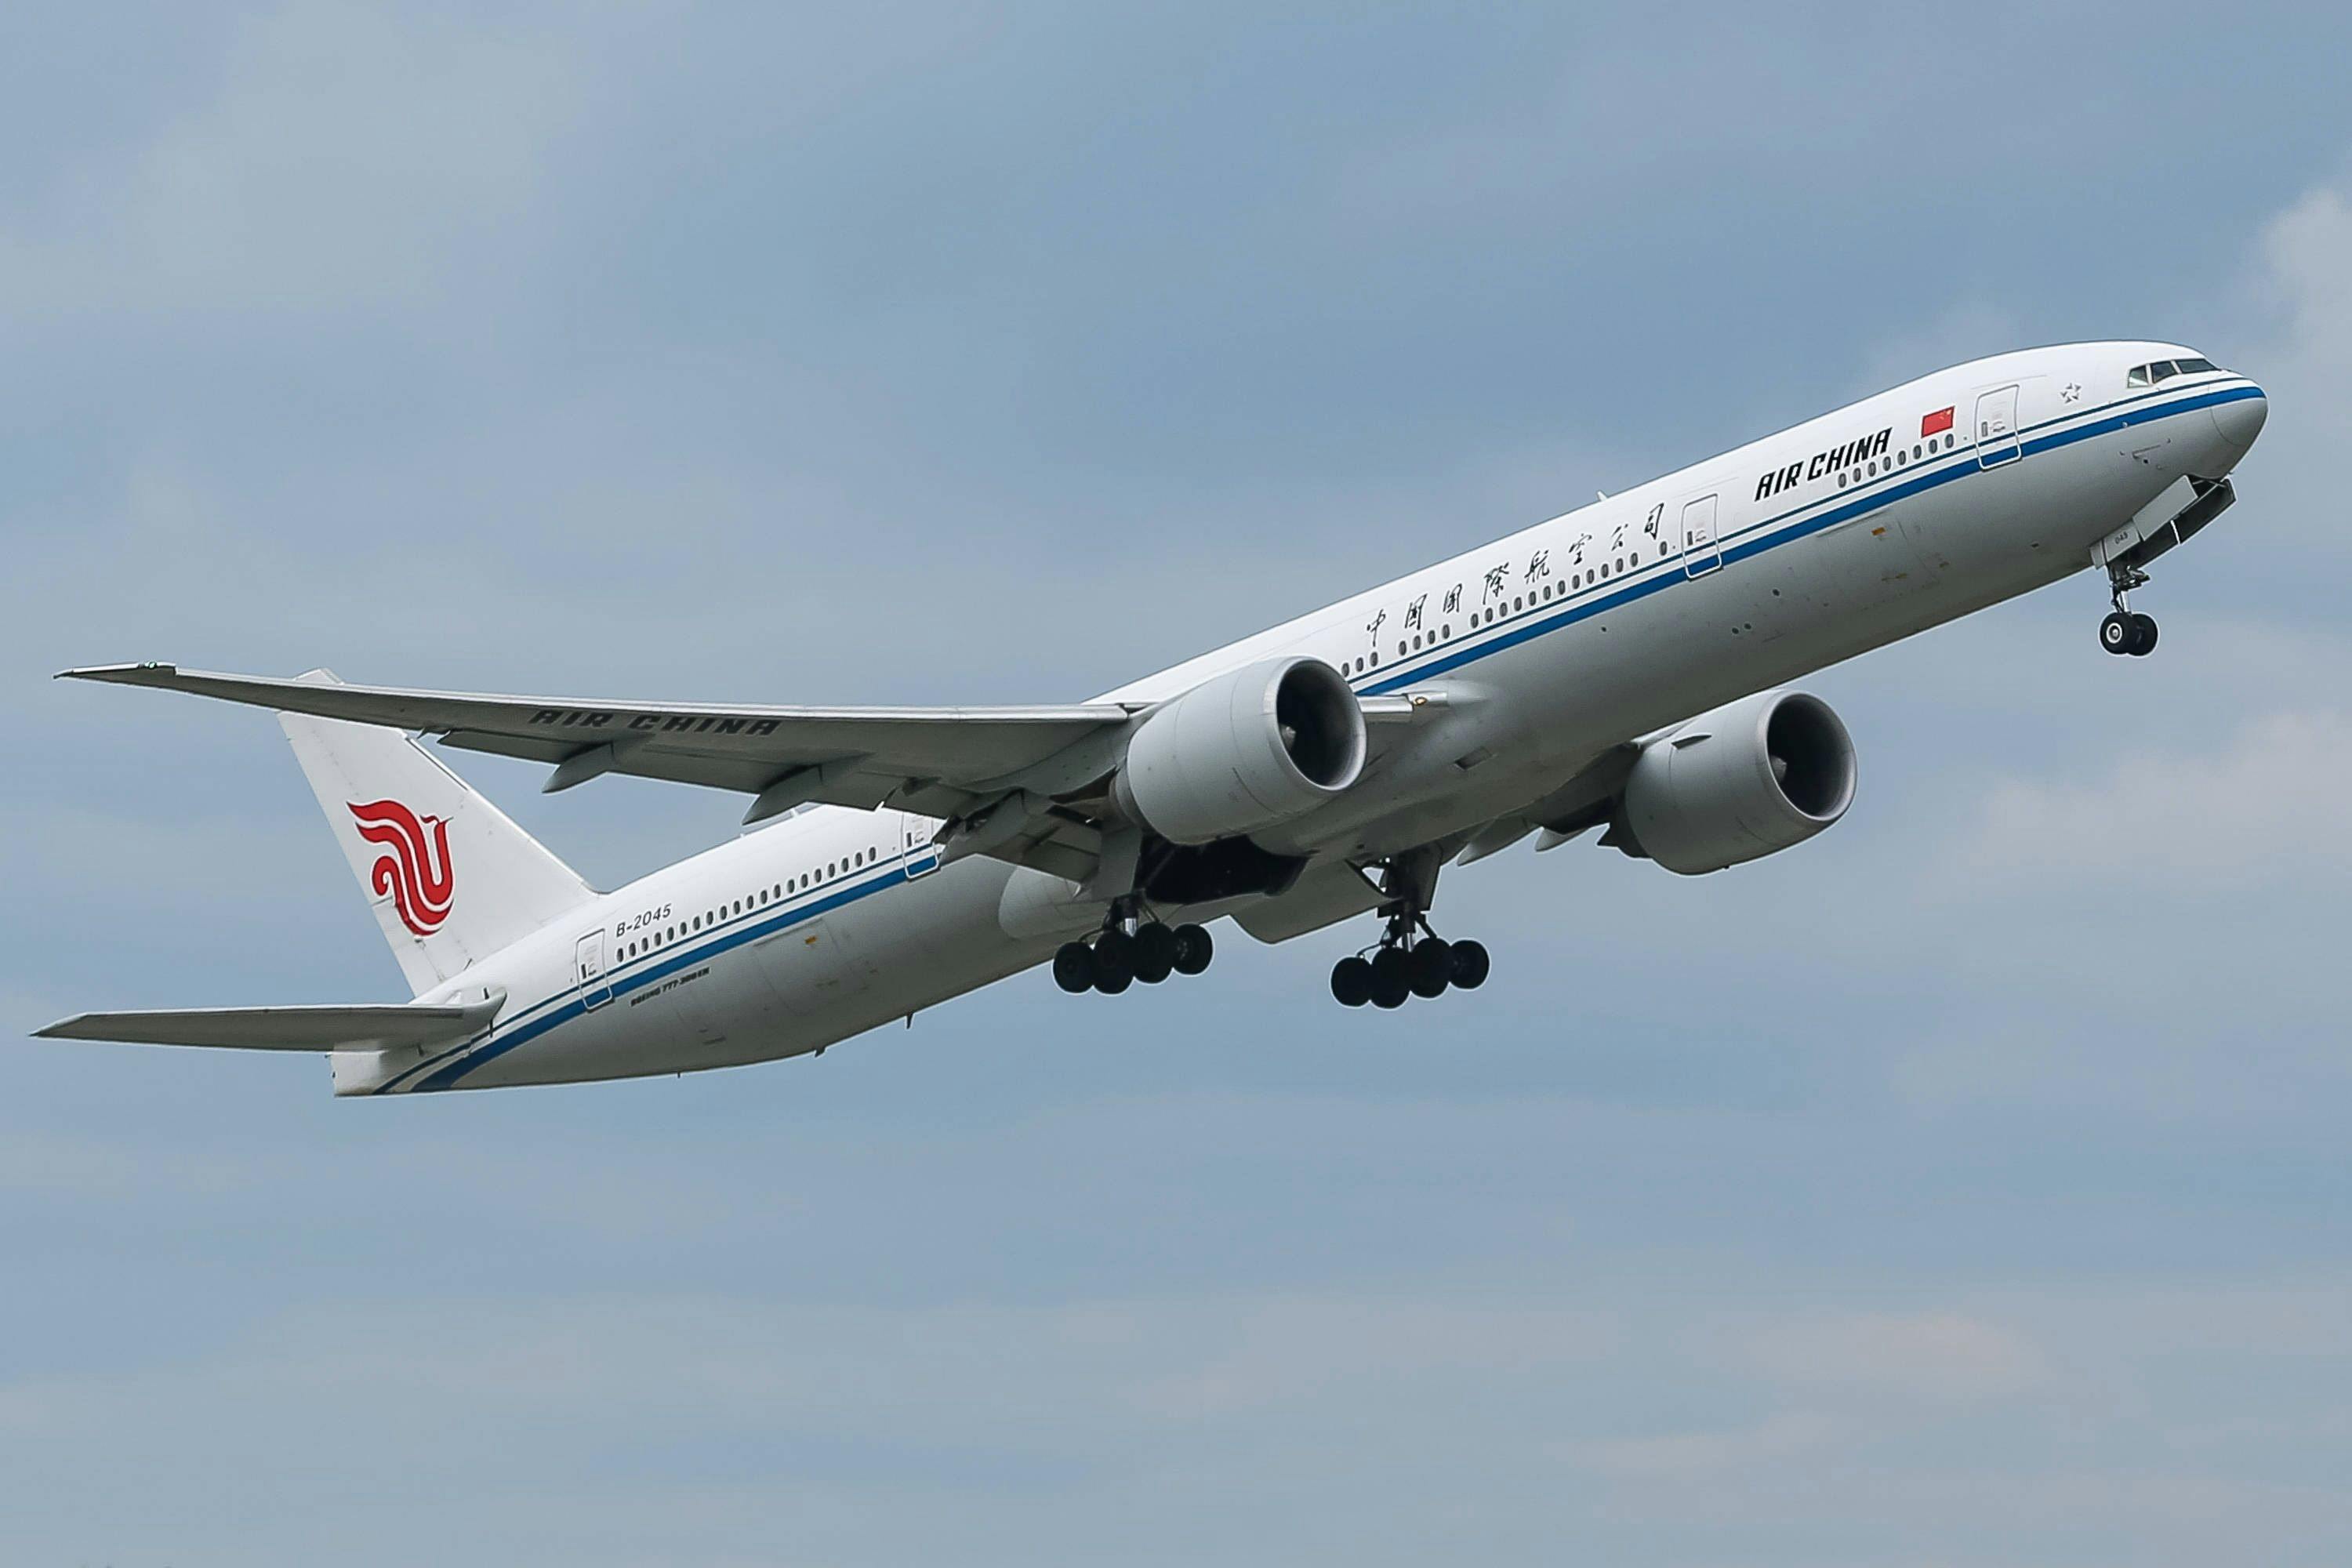 Eine 777-39LER der Fluglinie, Airline, Fluggesellschaft Air China mit dem Kennzeichen, der Registrierung B-2048 und der Seriennummer, MSN 41443 nach dem Start, Abheben vom Flughafen München, Take-Off vom Airport München, im Steigflug